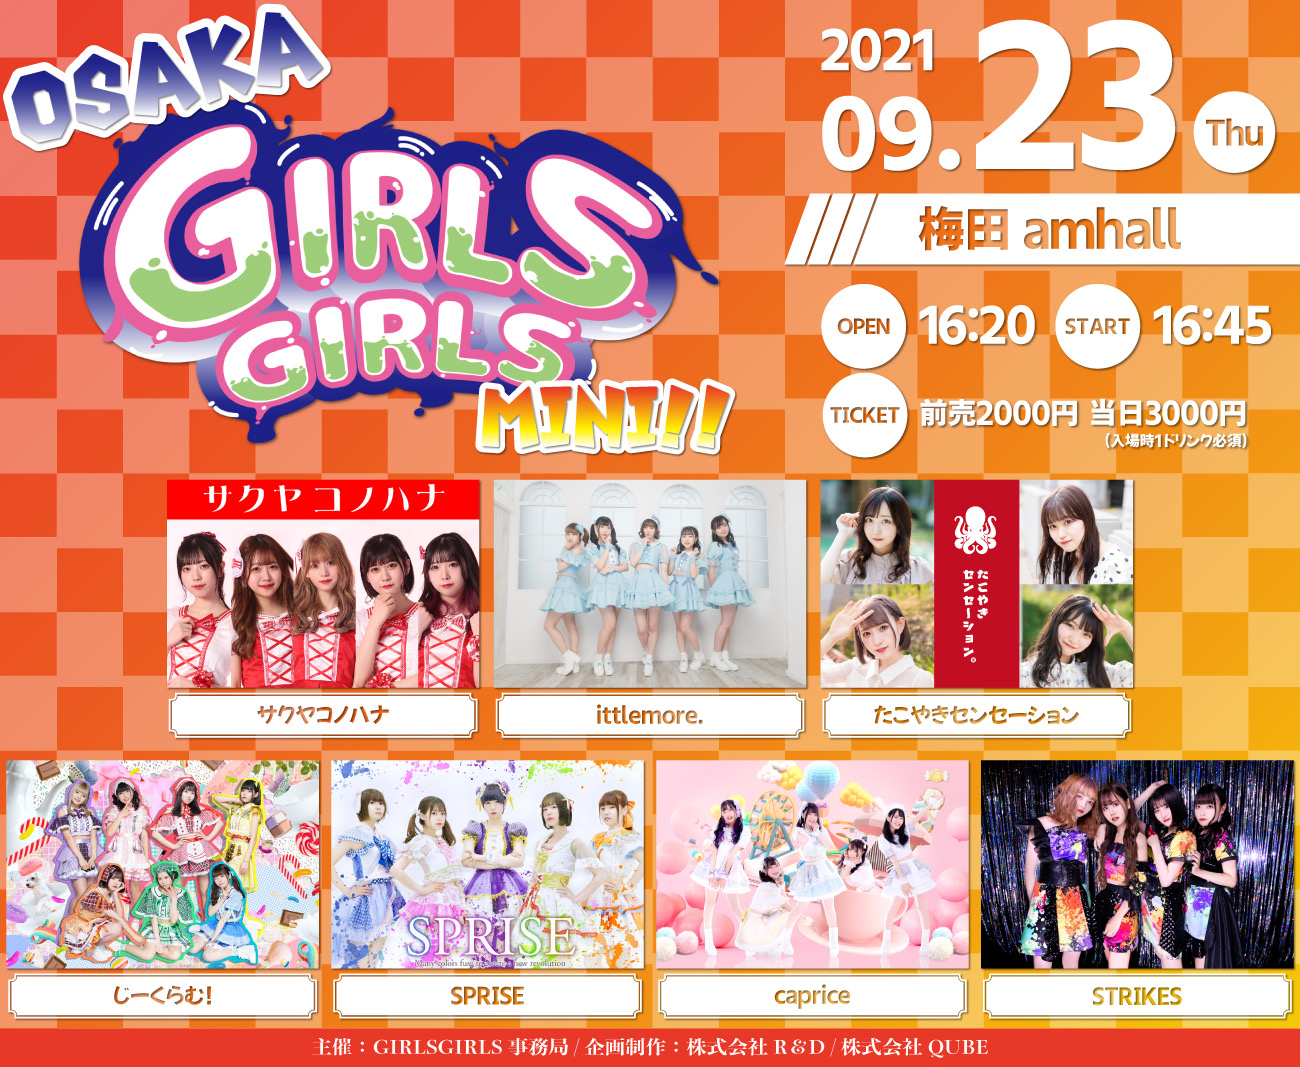 9/23(木祝) OSAKA GIRLS GIRLS mini!!